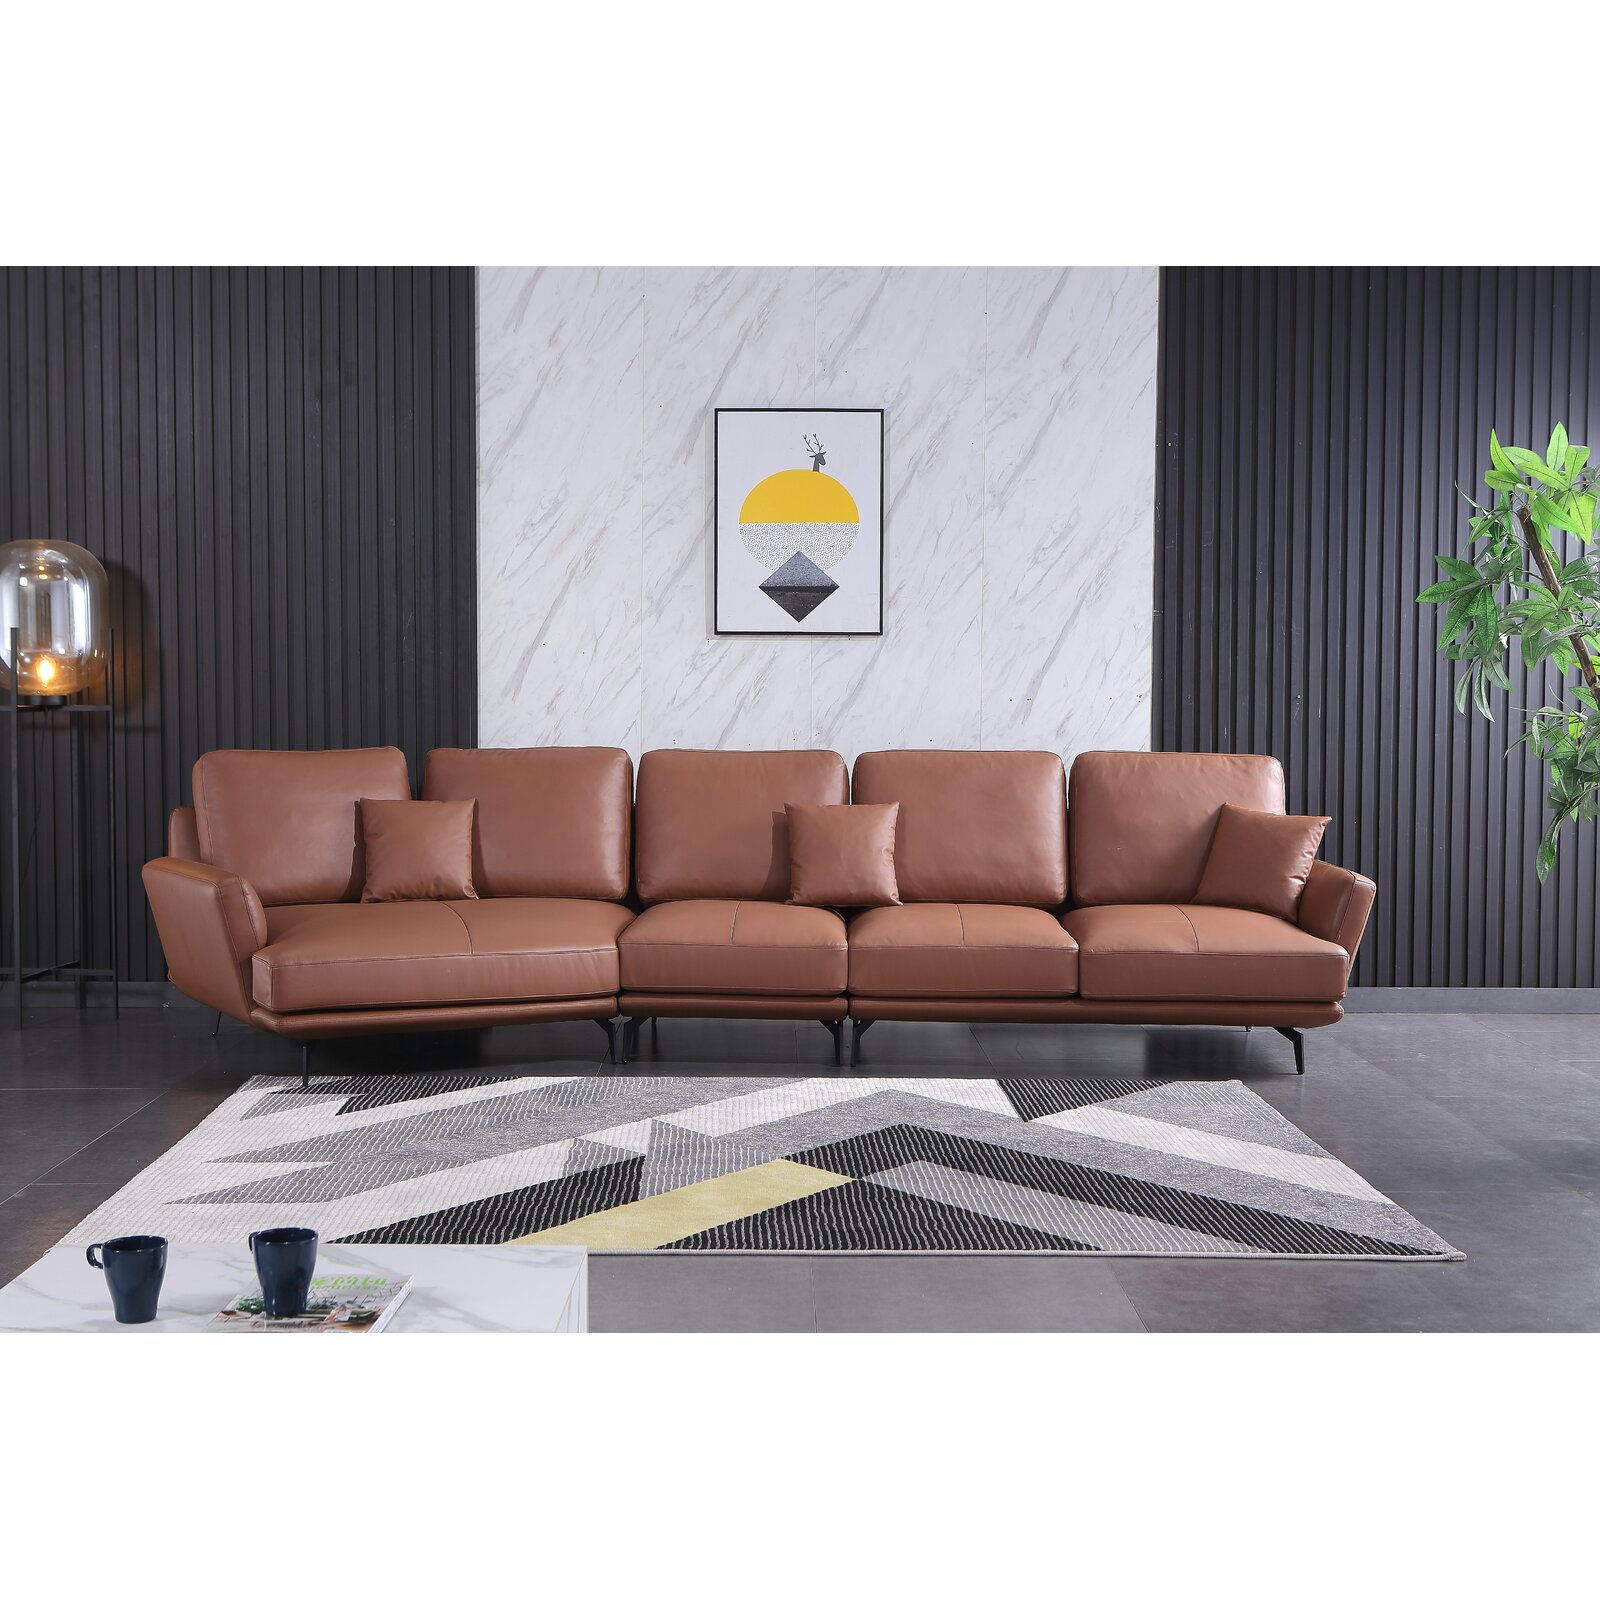 Corrigan Studio Putnam 175" Wide Genuine Leather Sofa & Chaise